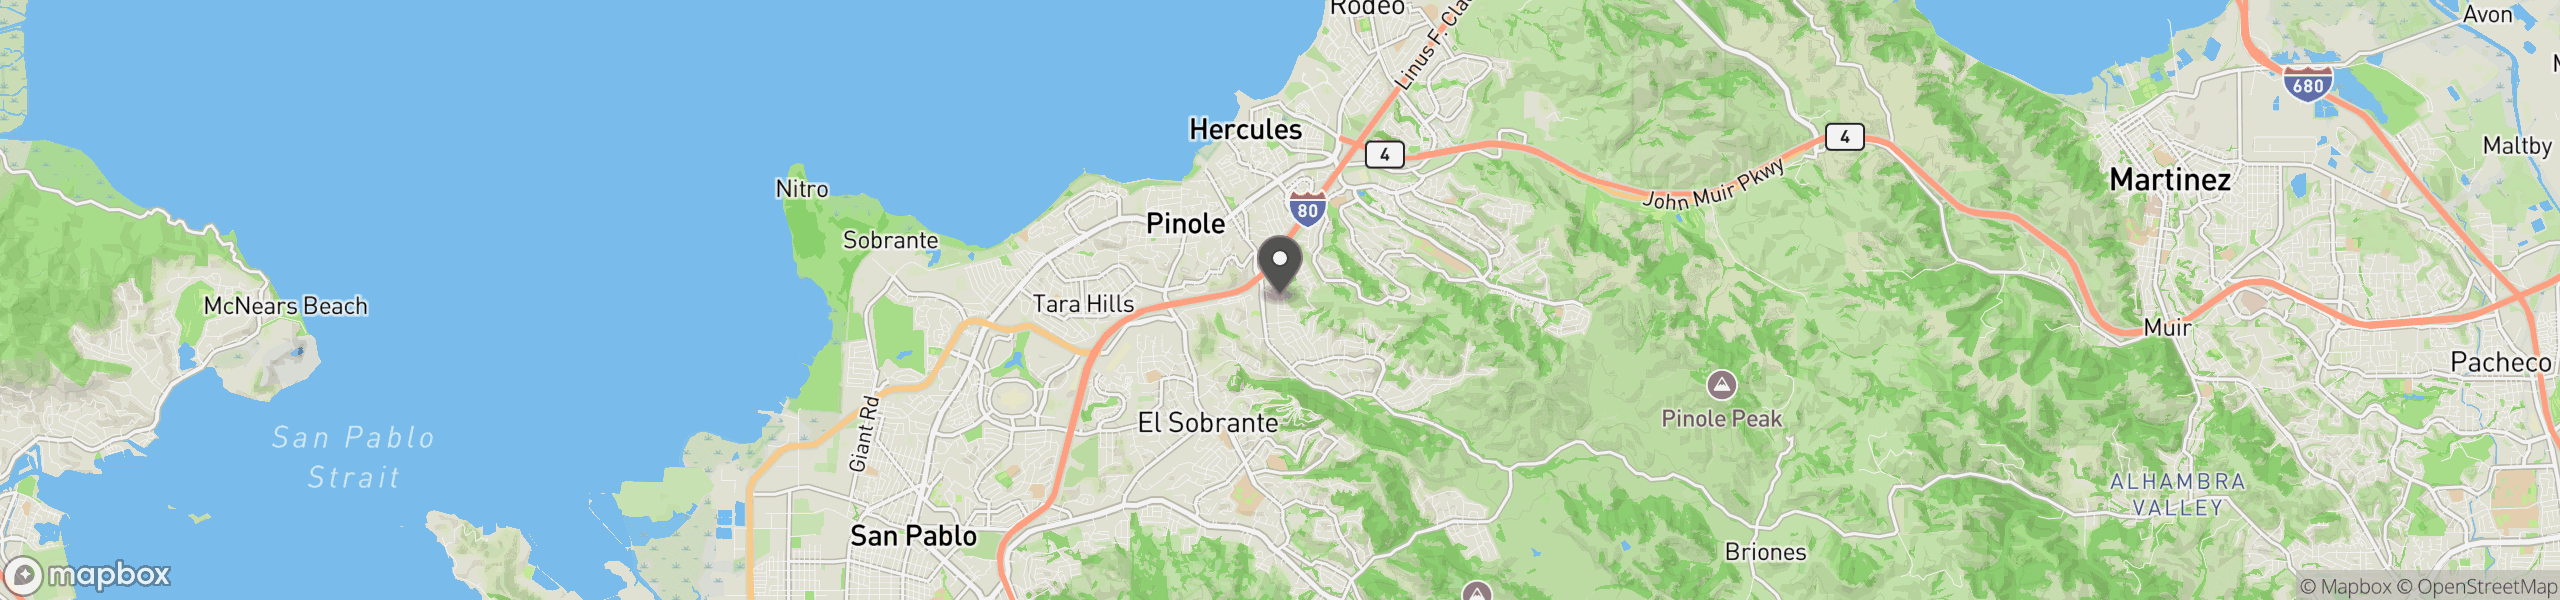 Pinole, CA 94564